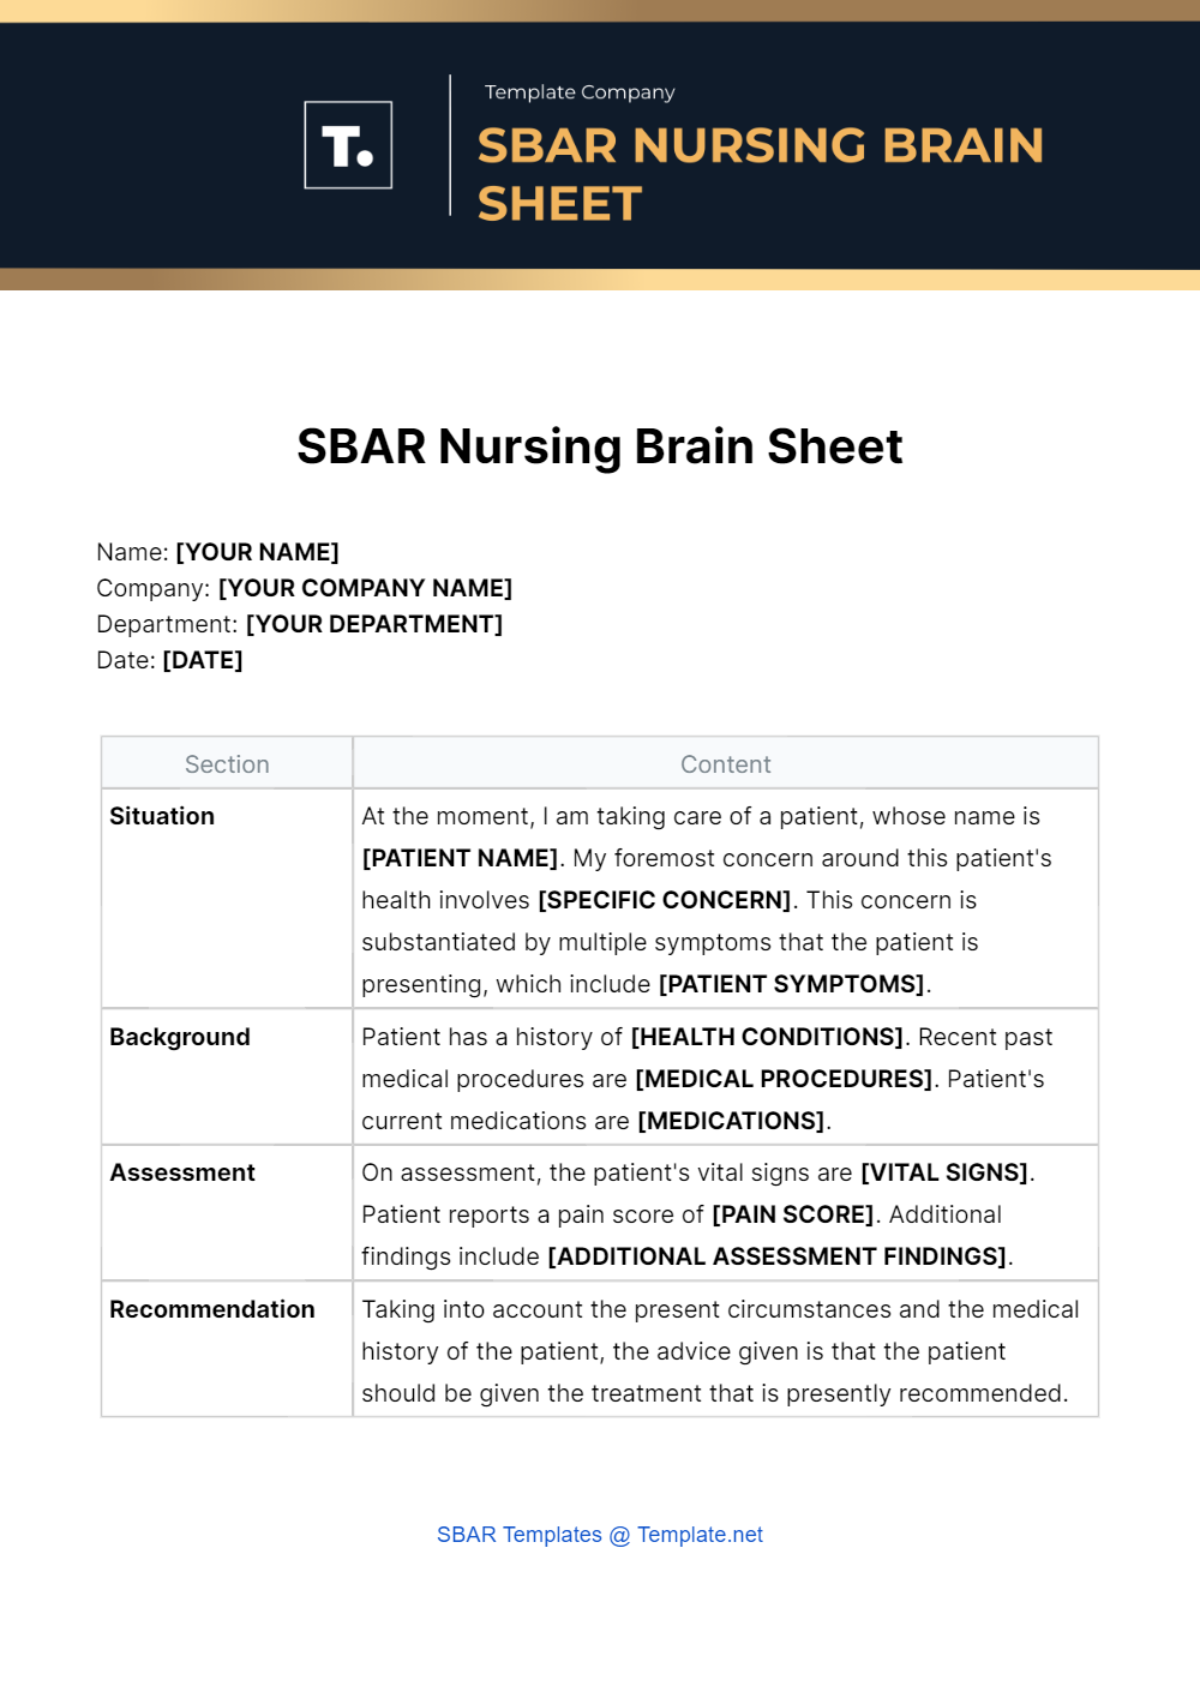 Free SBAR Nursing Brain Sheet Template